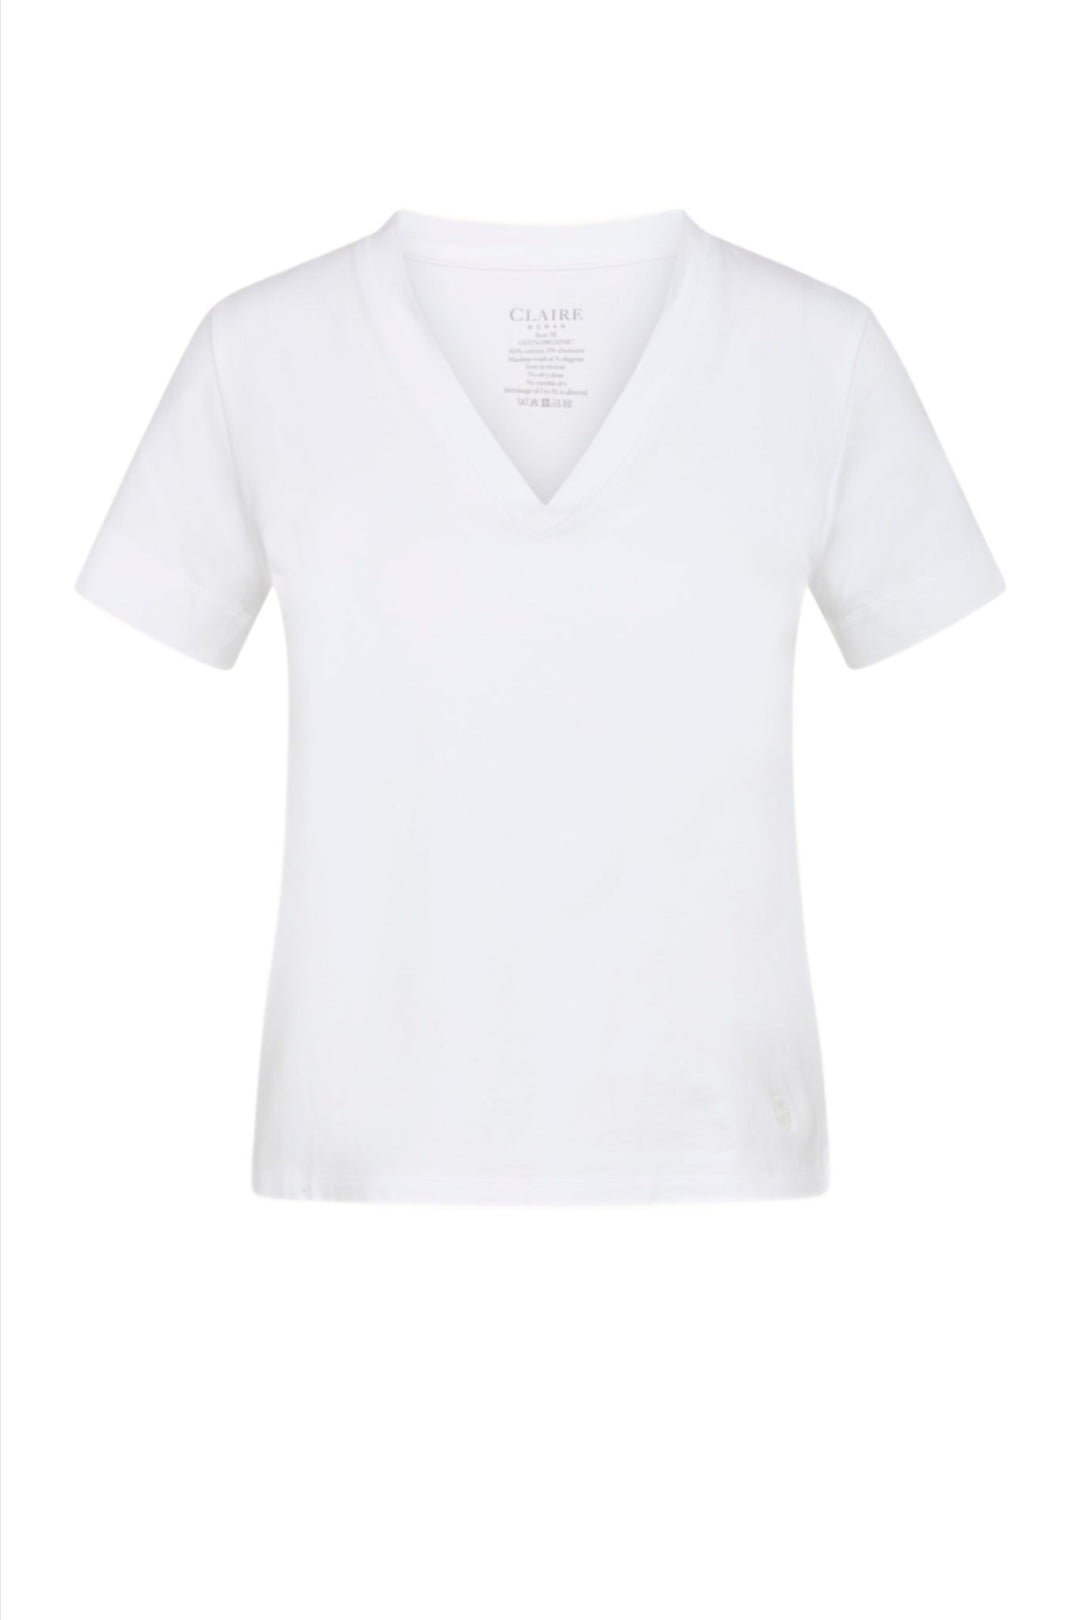 Aurora-Cw T-Shirt White | Skjorter og bluser | Smuk - Dameklær på nett